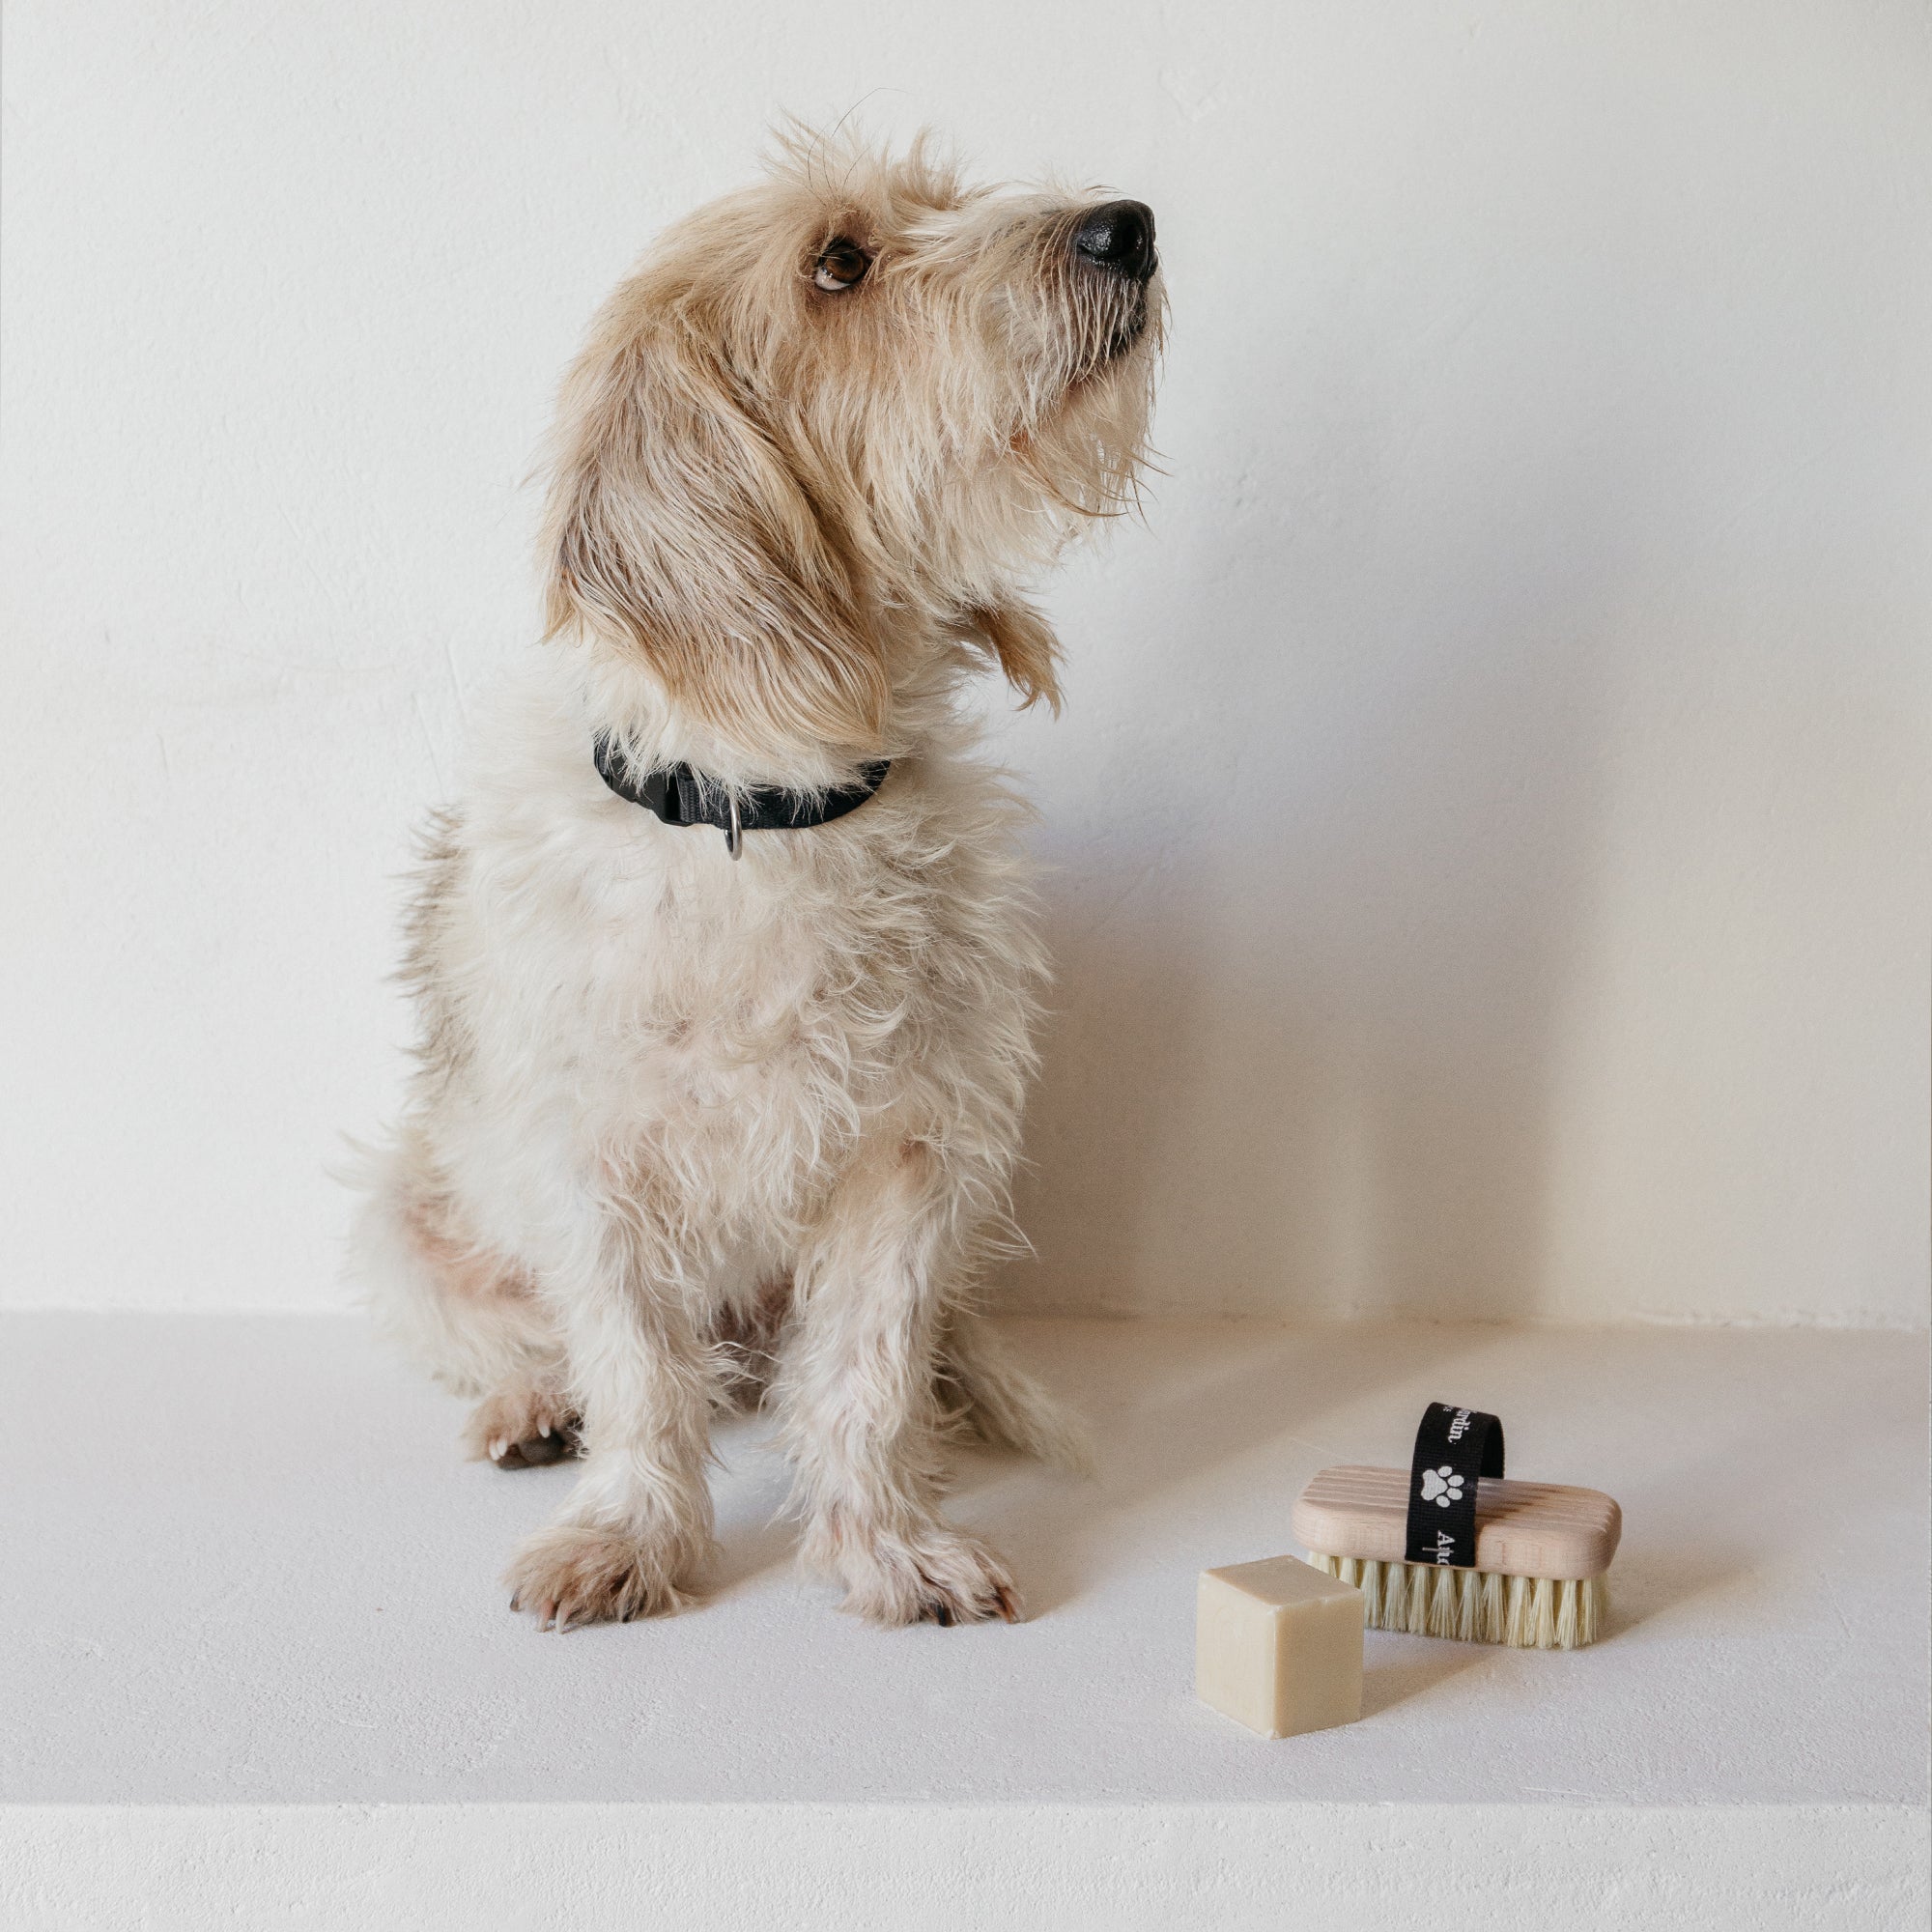 Bath and massage dog brush & soap set